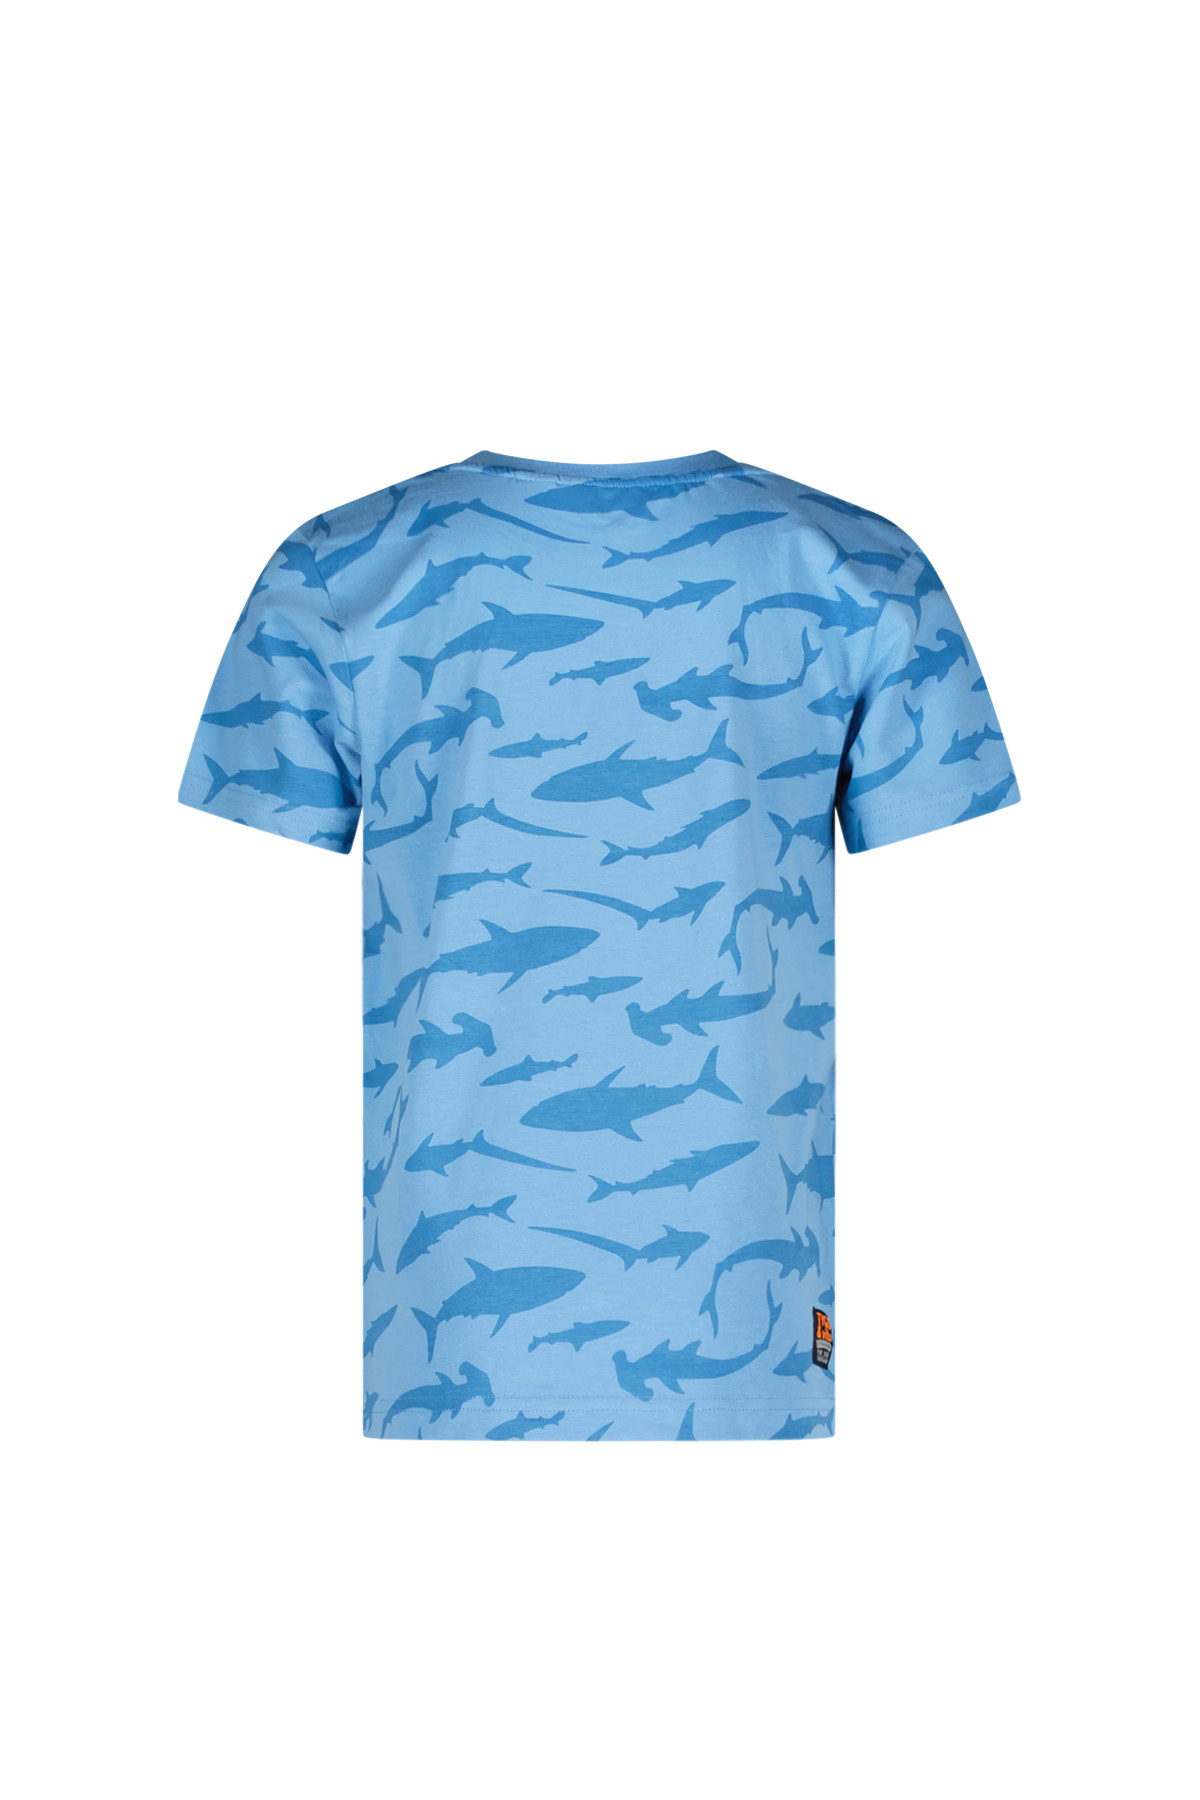 Tygo & Vito Jongens t-shirt - Thijs - Helder blauw